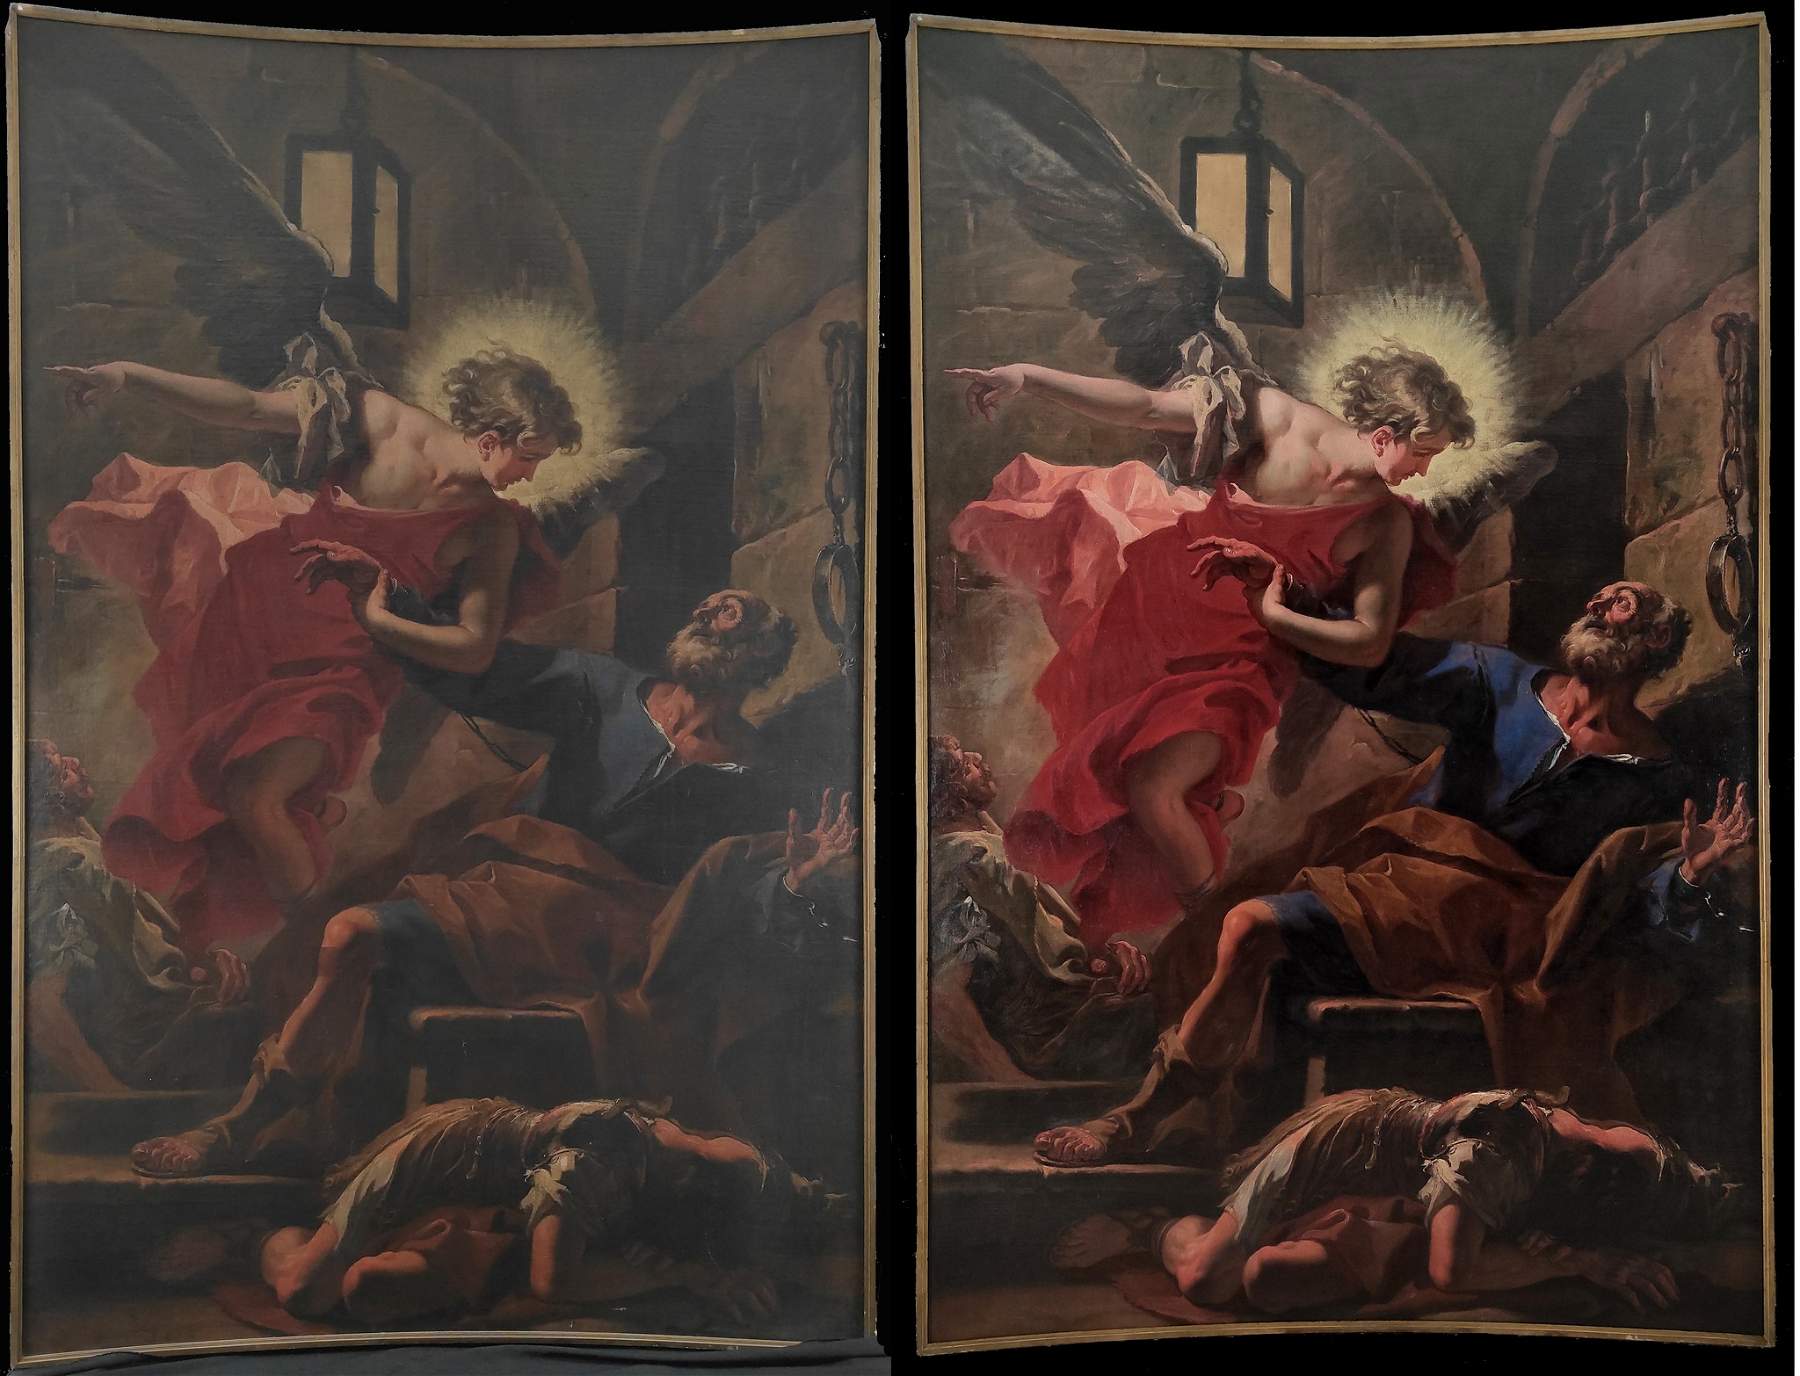 Bérgamo, finaliza la restauración de una obra maestra monumental de Sebastiano Ricci